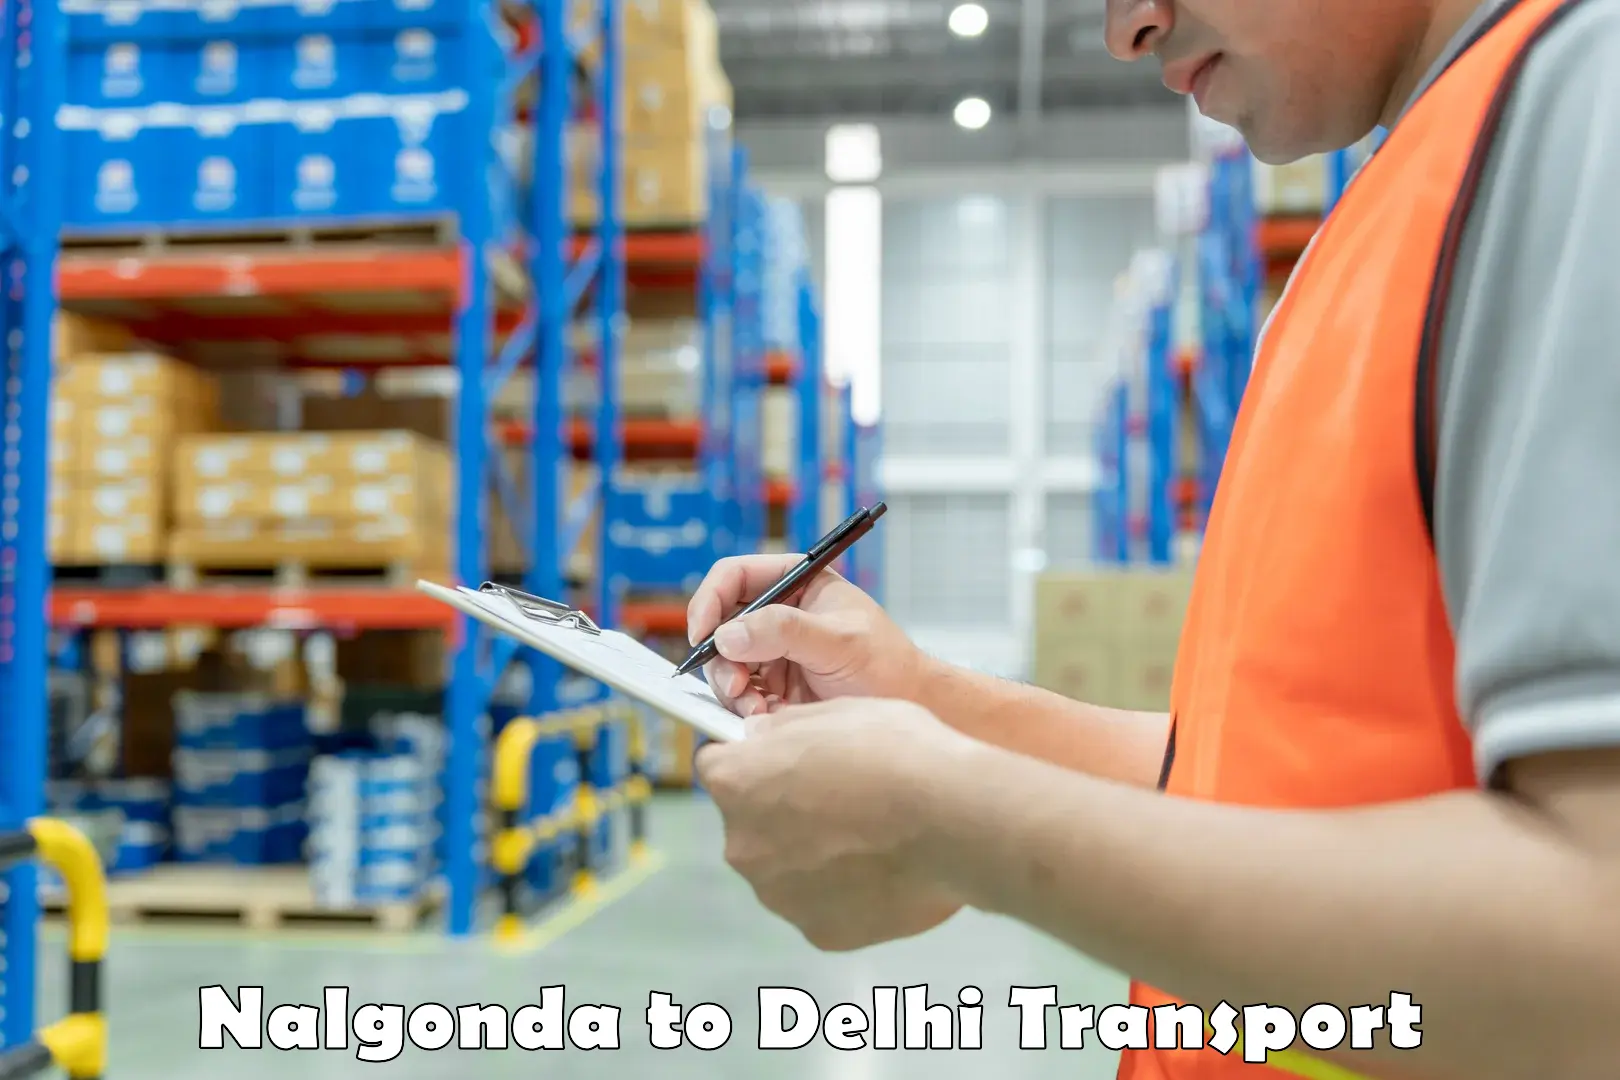 Online transport service Nalgonda to University of Delhi